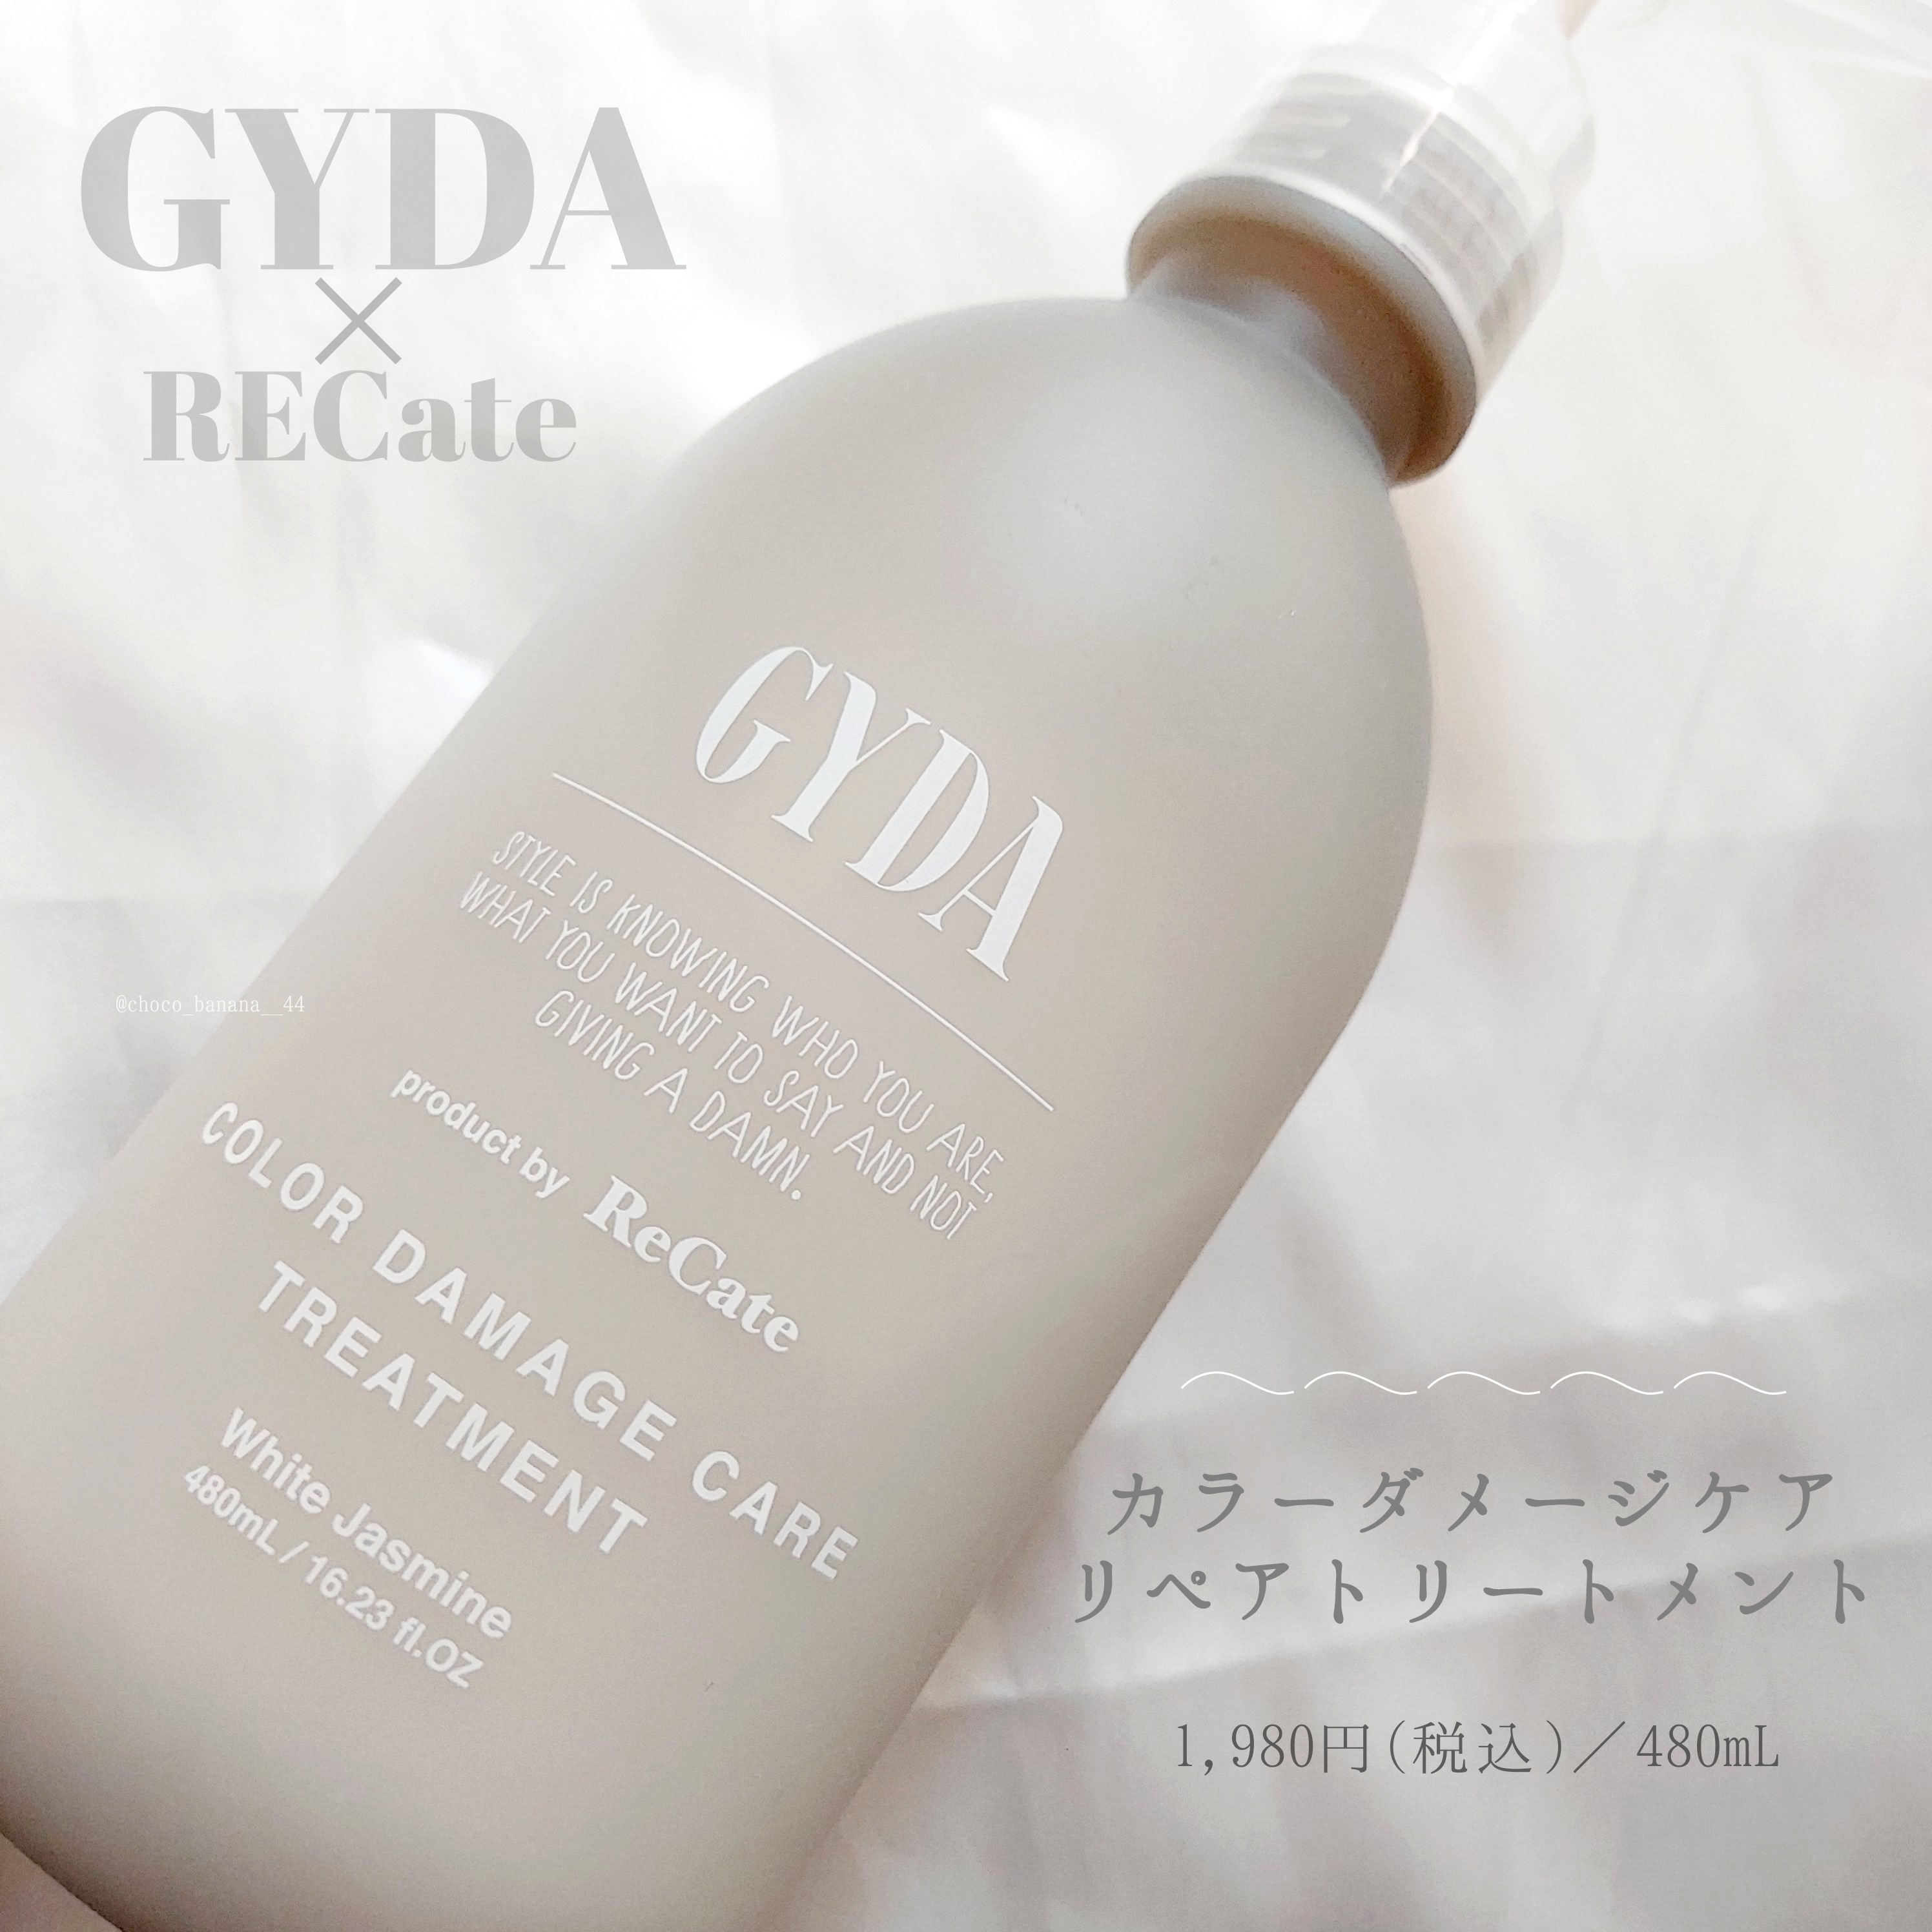 GYDA×ReCateカラーダメージケア リペアシリーズを使ったししさんのクチコミ画像7